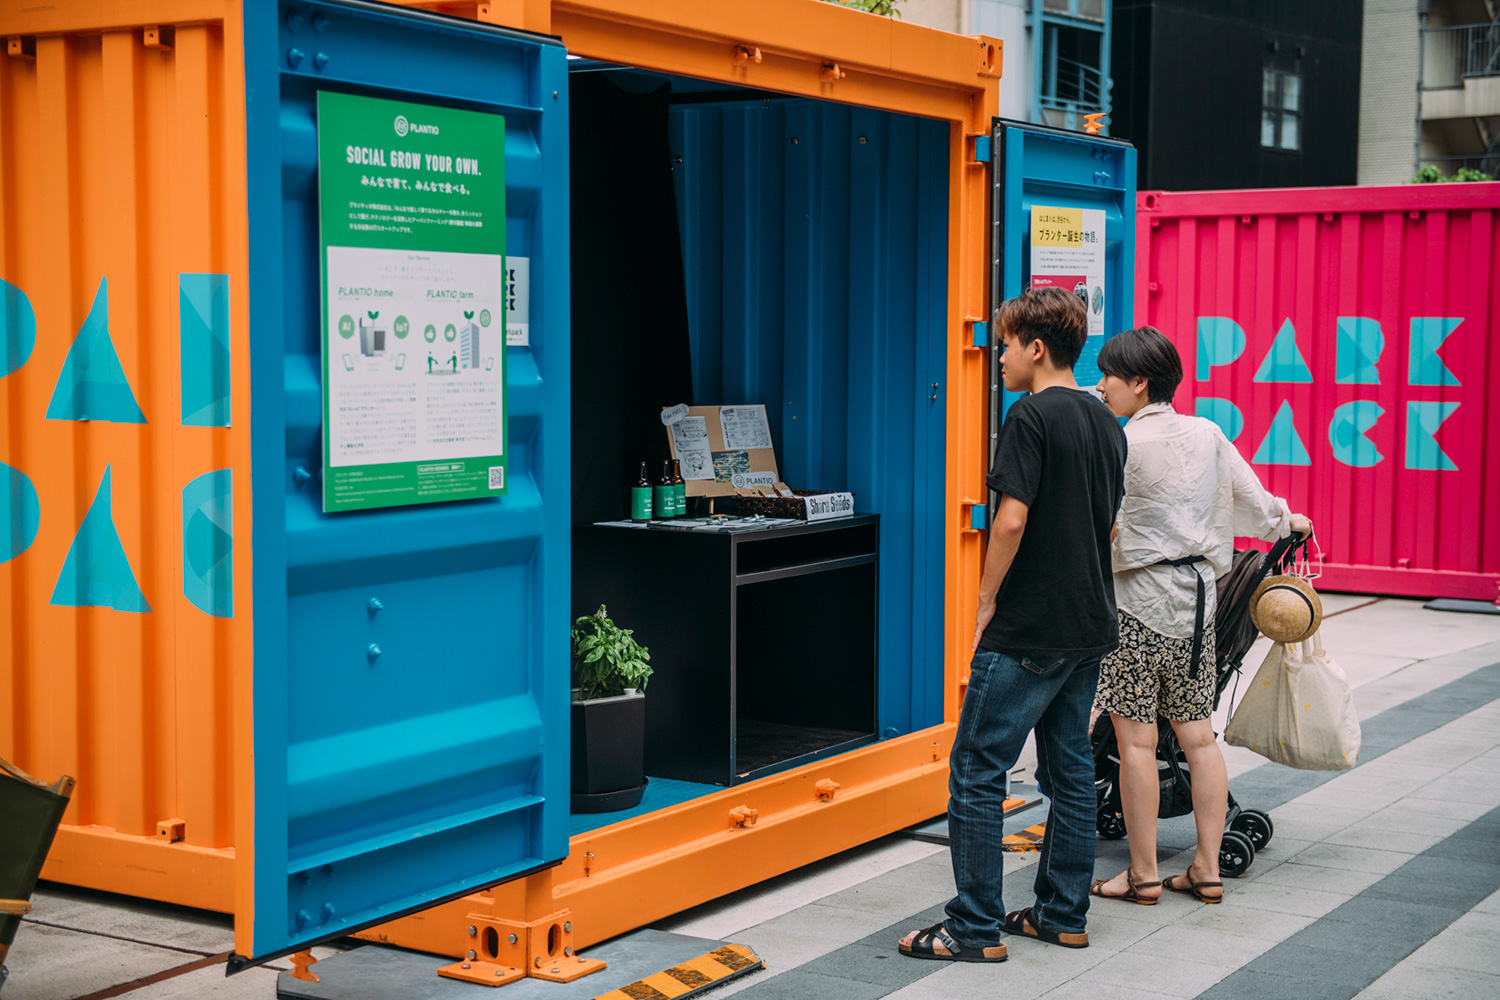 アイデアピッチ入賞を経た“新しい渋谷のお土産”プロジェクト、渋谷川で体験展示